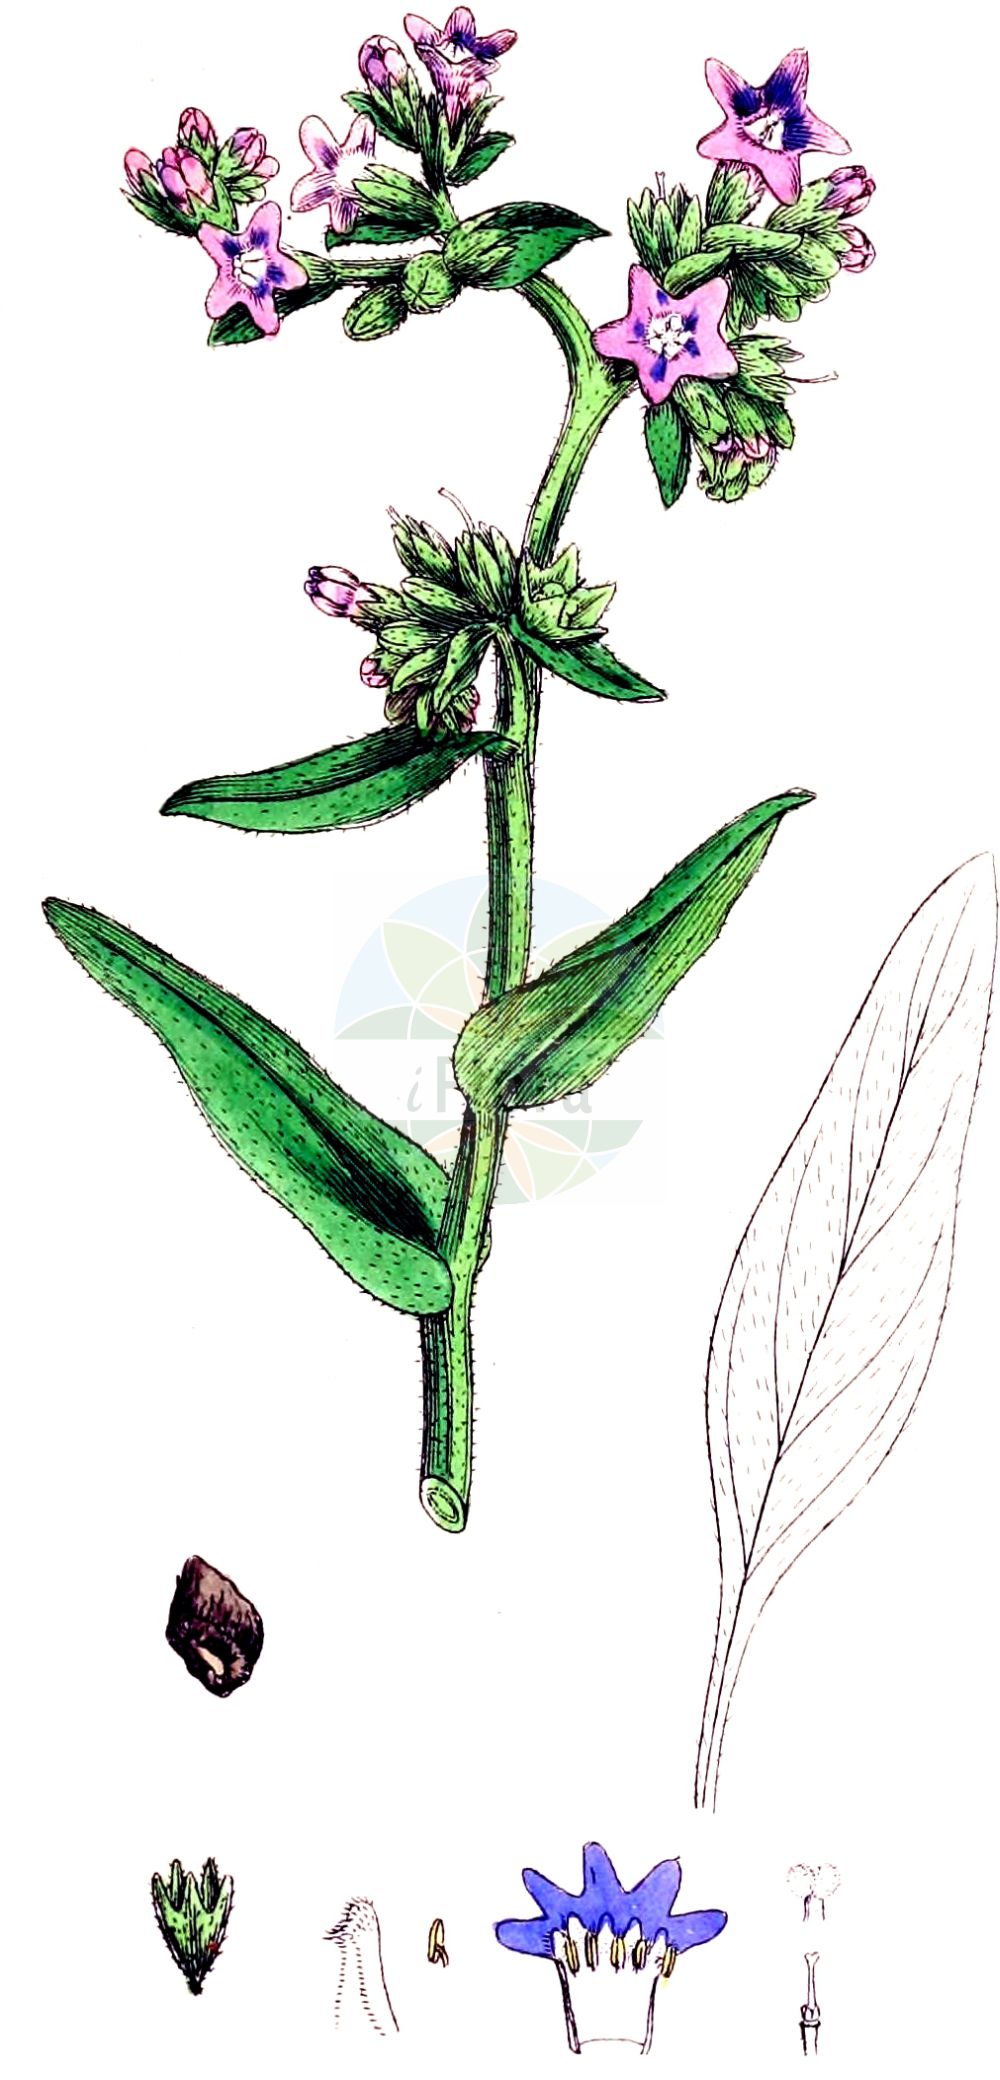 Historische Abbildung von Anchusa officinalis (Echte Ochsenzunge - Alkanet). Das Bild zeigt Blatt, Bluete, Frucht und Same. ---- Historical Drawing of Anchusa officinalis (Echte Ochsenzunge - Alkanet). The image is showing leaf, flower, fruit and seed.(Anchusa officinalis,Echte Ochsenzunge,Alkanet,Anchusa angustifolia,Anchusa arvalis,Anchusa microcalyx,Anchusa officinalis,Anchusa osmanica,Echte Ochsenzunge,Alkanet,Italian Alkanet,Common Bugloss,Italian Bugloss,Large Blue Alkanet,Anchusa,Ochsenzunge,Bugloss,Boraginaceae,Raublattgewächse,Forget-me-Not family,Blatt,Bluete,Frucht,Same,leaf,flower,fruit,seed,Sowerby (1790-1813))